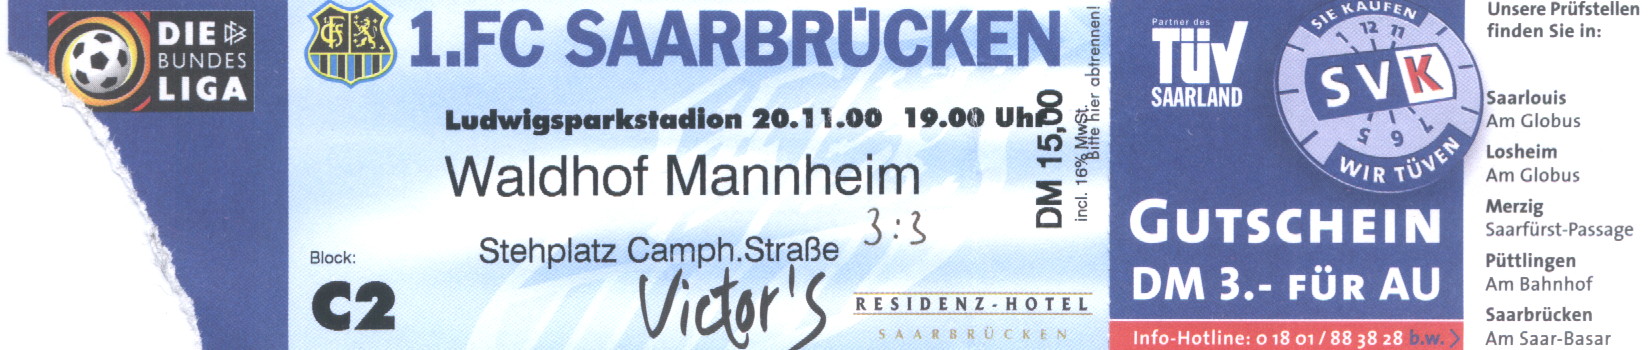 1. FC Saarbruecken - SVW, 2. BL, 20.11.00, 3-3.JPG